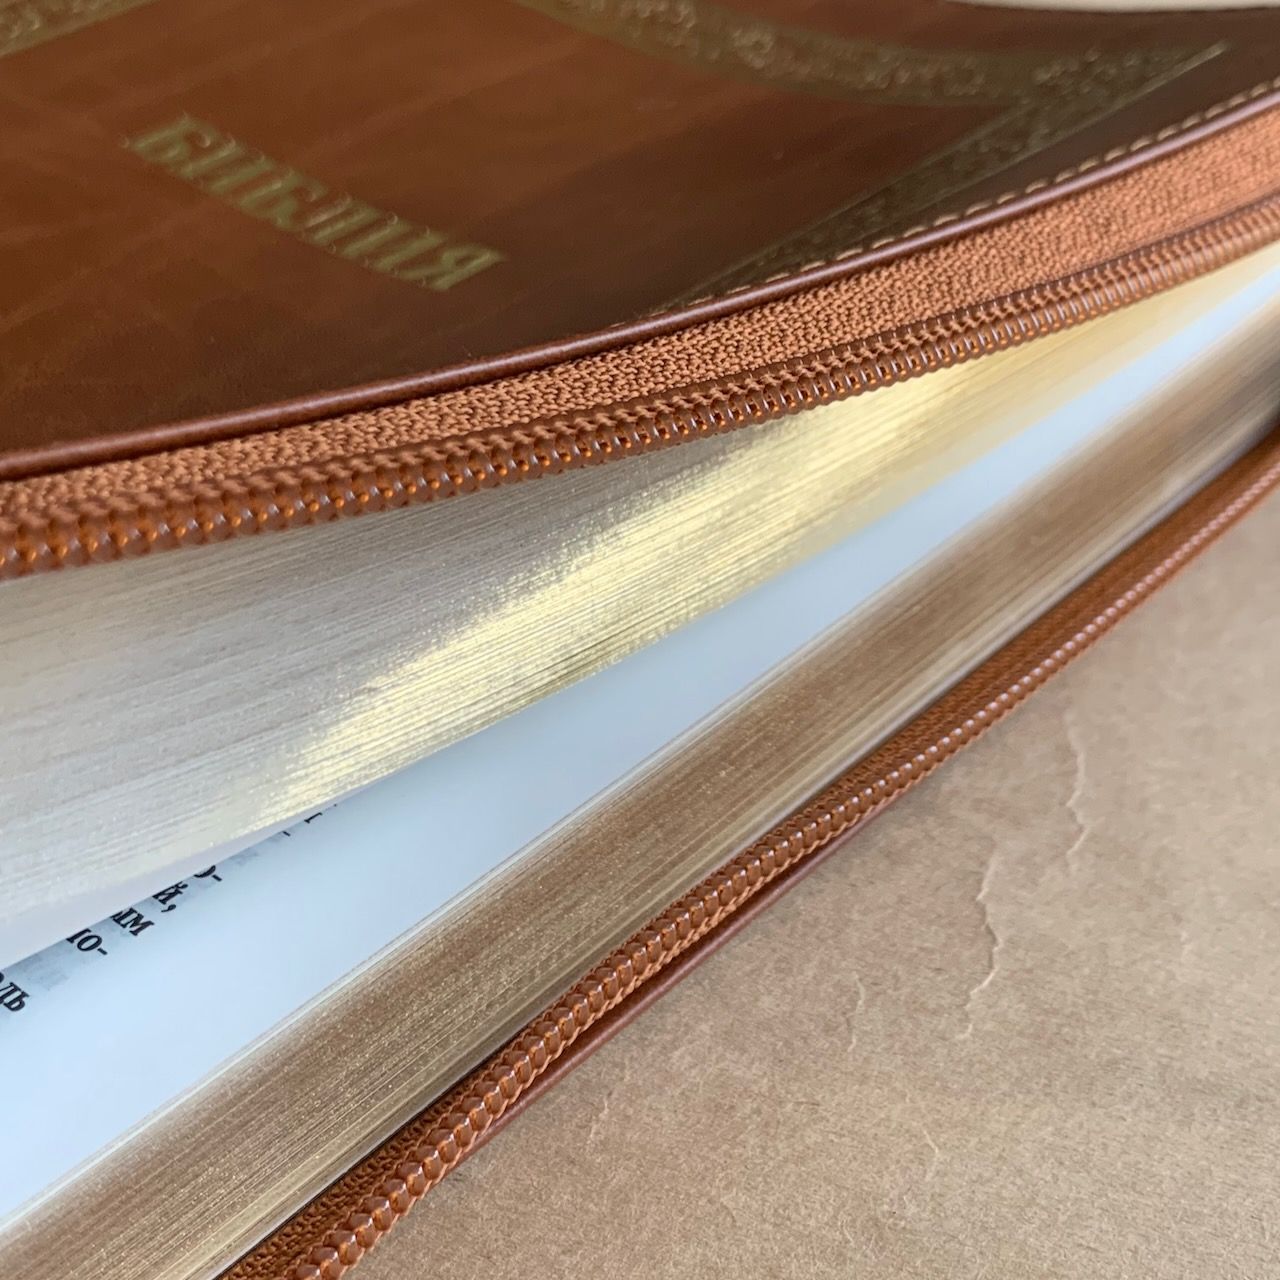 Библия 076z код B3, дизайн "золотая рамка растительный орнамент", кожаный переплет на молнии, цвет светло-коричневый с прожилками, размер 180x243 мм